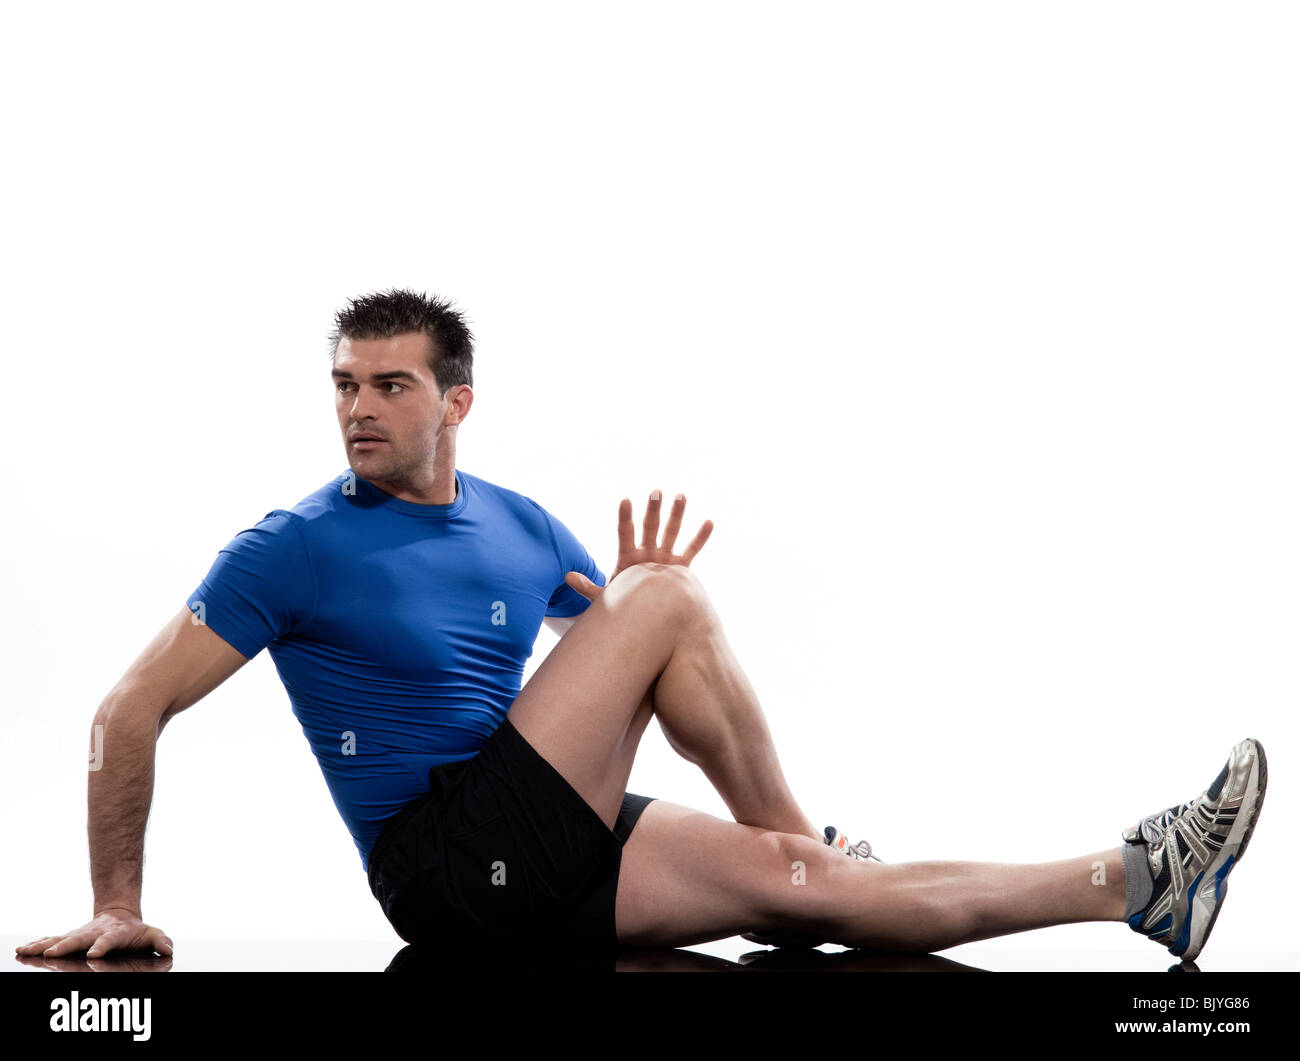 Mann auf die Bauchmuskeln Drehung Training Körperhaltung auf weißem Hintergrund. Sitzen Sie, Strecken Sie ein Bein und beugen Sie dem andern. Halten Sie die Knie und bringen Sie es zu Ihnen für 10-20 Sekunden. Lösen und wechseln. Stockfoto